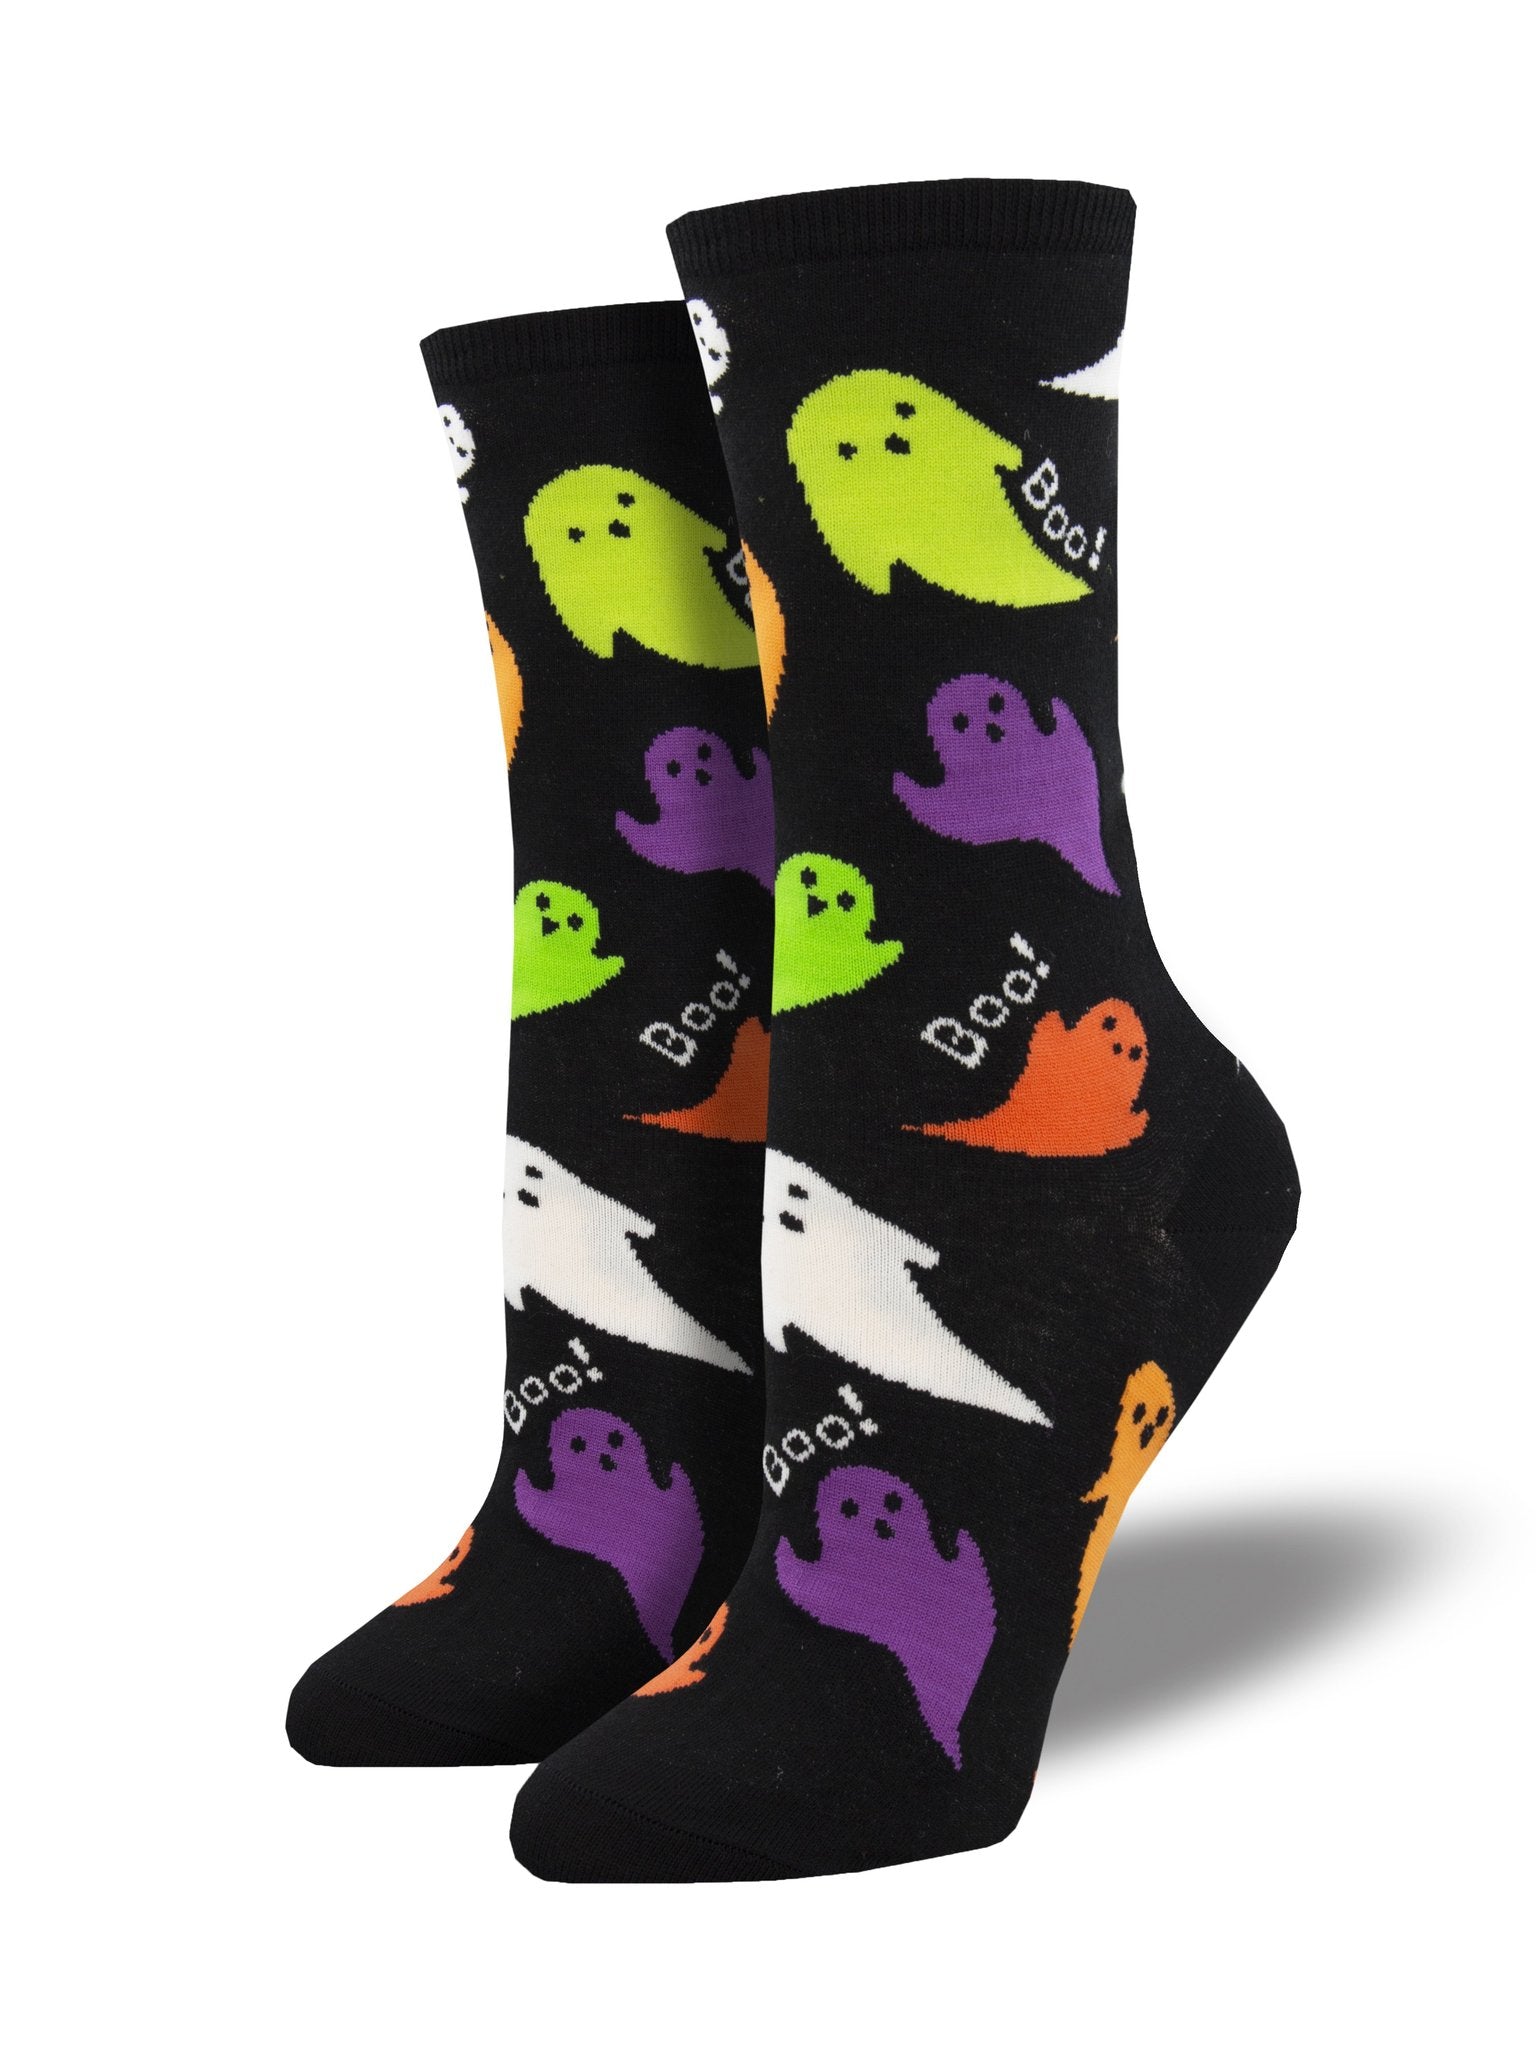 Boo Women's Socks